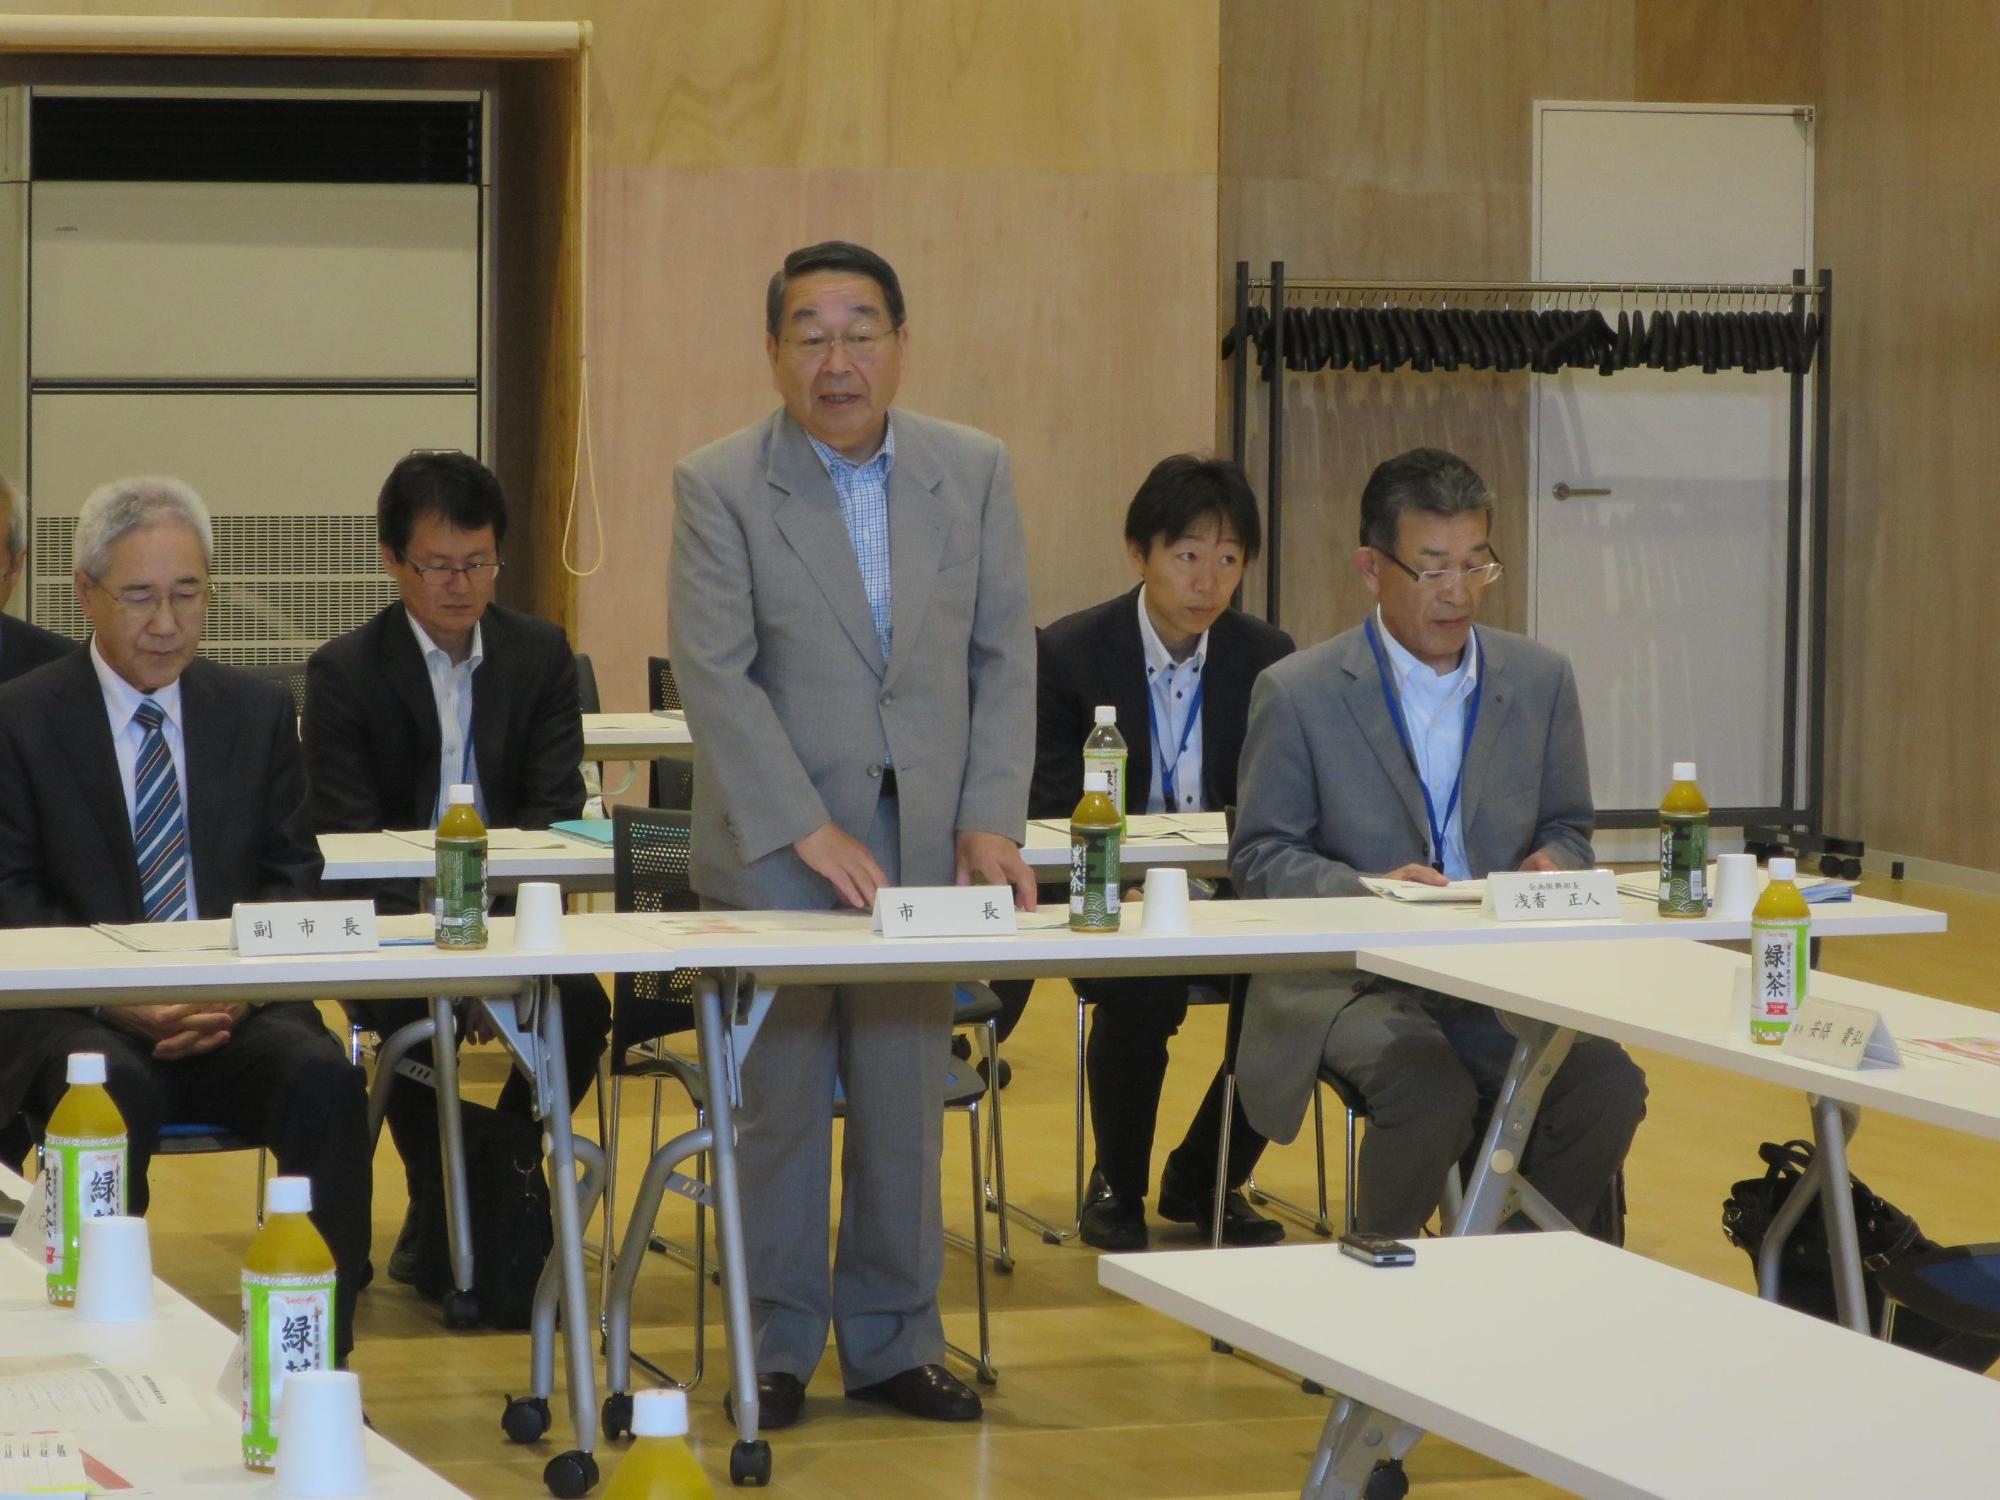 「恵庭創生懇談会」にて挨拶をしている原田市長の写真